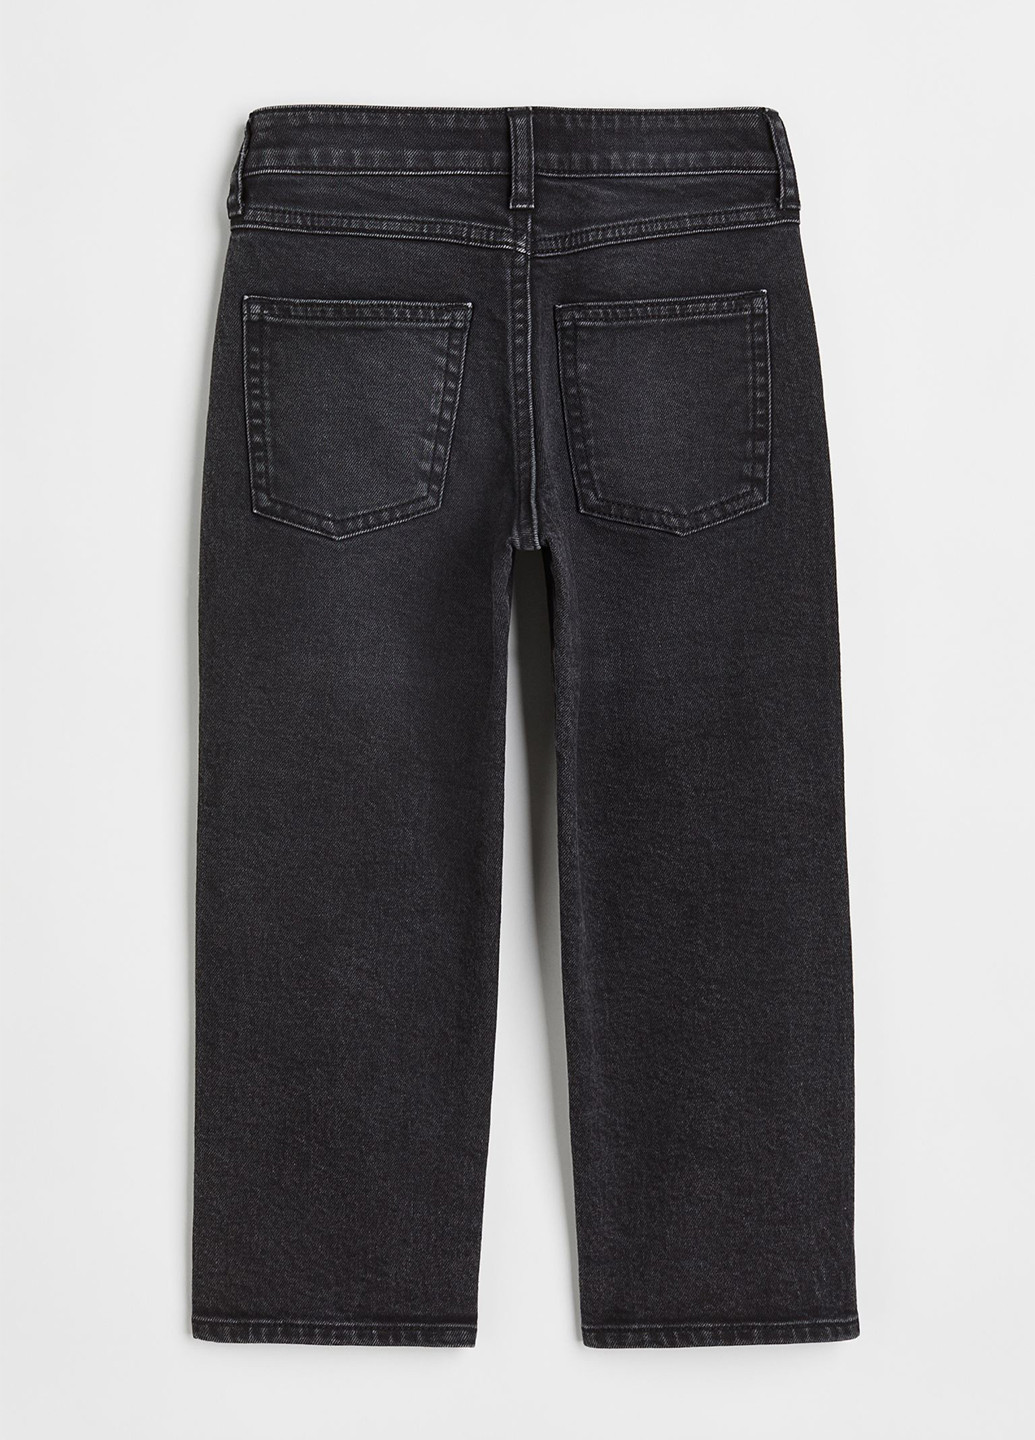 Темно-серые демисезонные прямые джинсы H&M